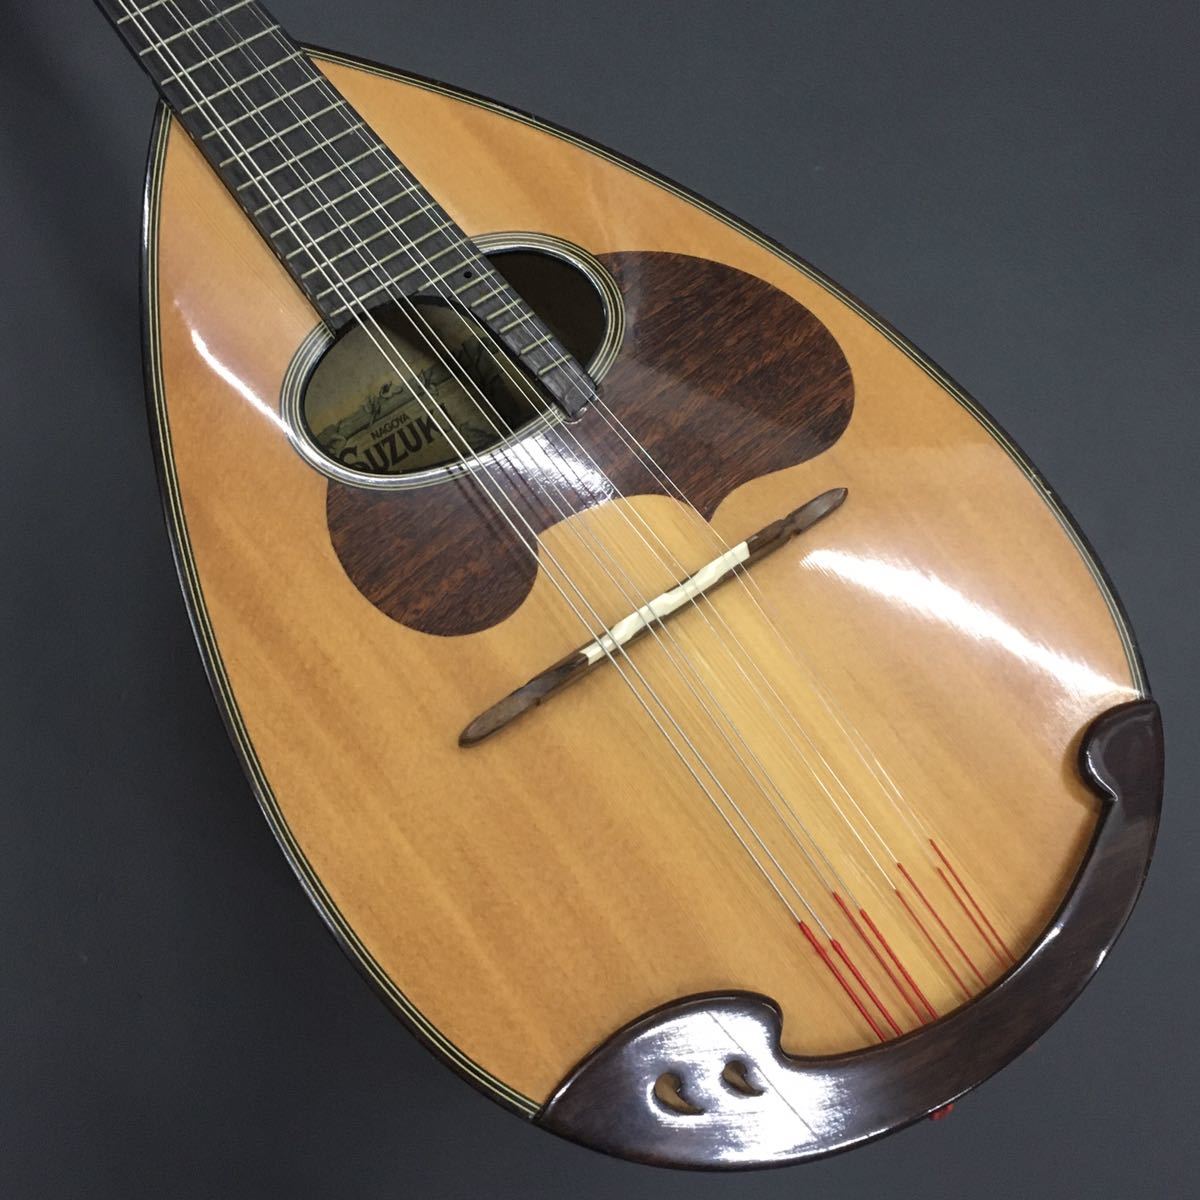 SUZUKI VIOLIN NAGOYA M-30 Suzuki mandolin stringed instruments . musical instruments case none 